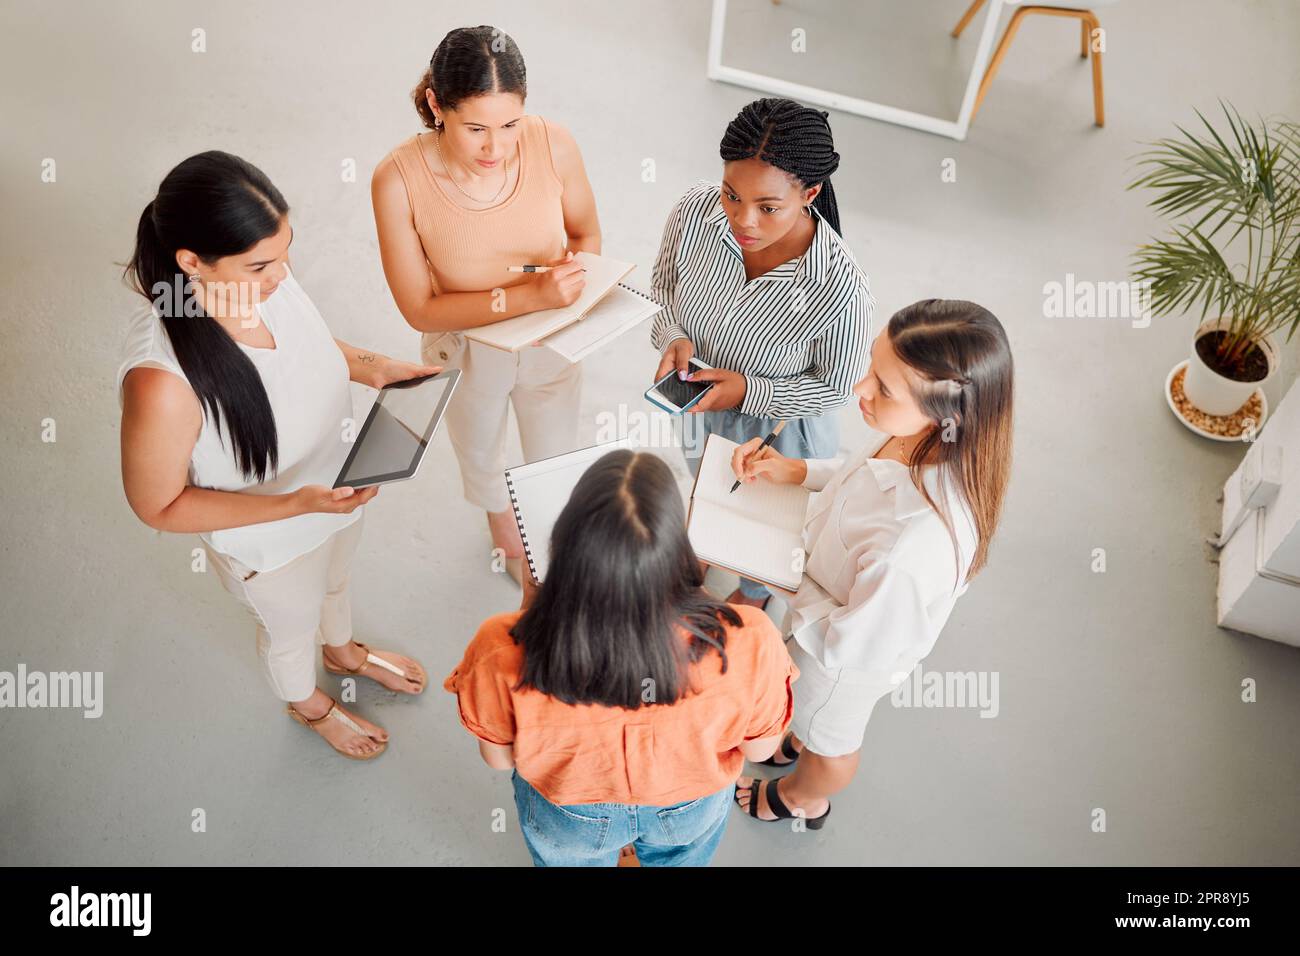 Vielfältige Gruppe von fünf Geschäftsfrauen, die sich bei der Arbeit treffen. Seriöse Geschäftsleute, die sich unterhalten und planen, während sie in einem Büro von oben stehen Stockfoto